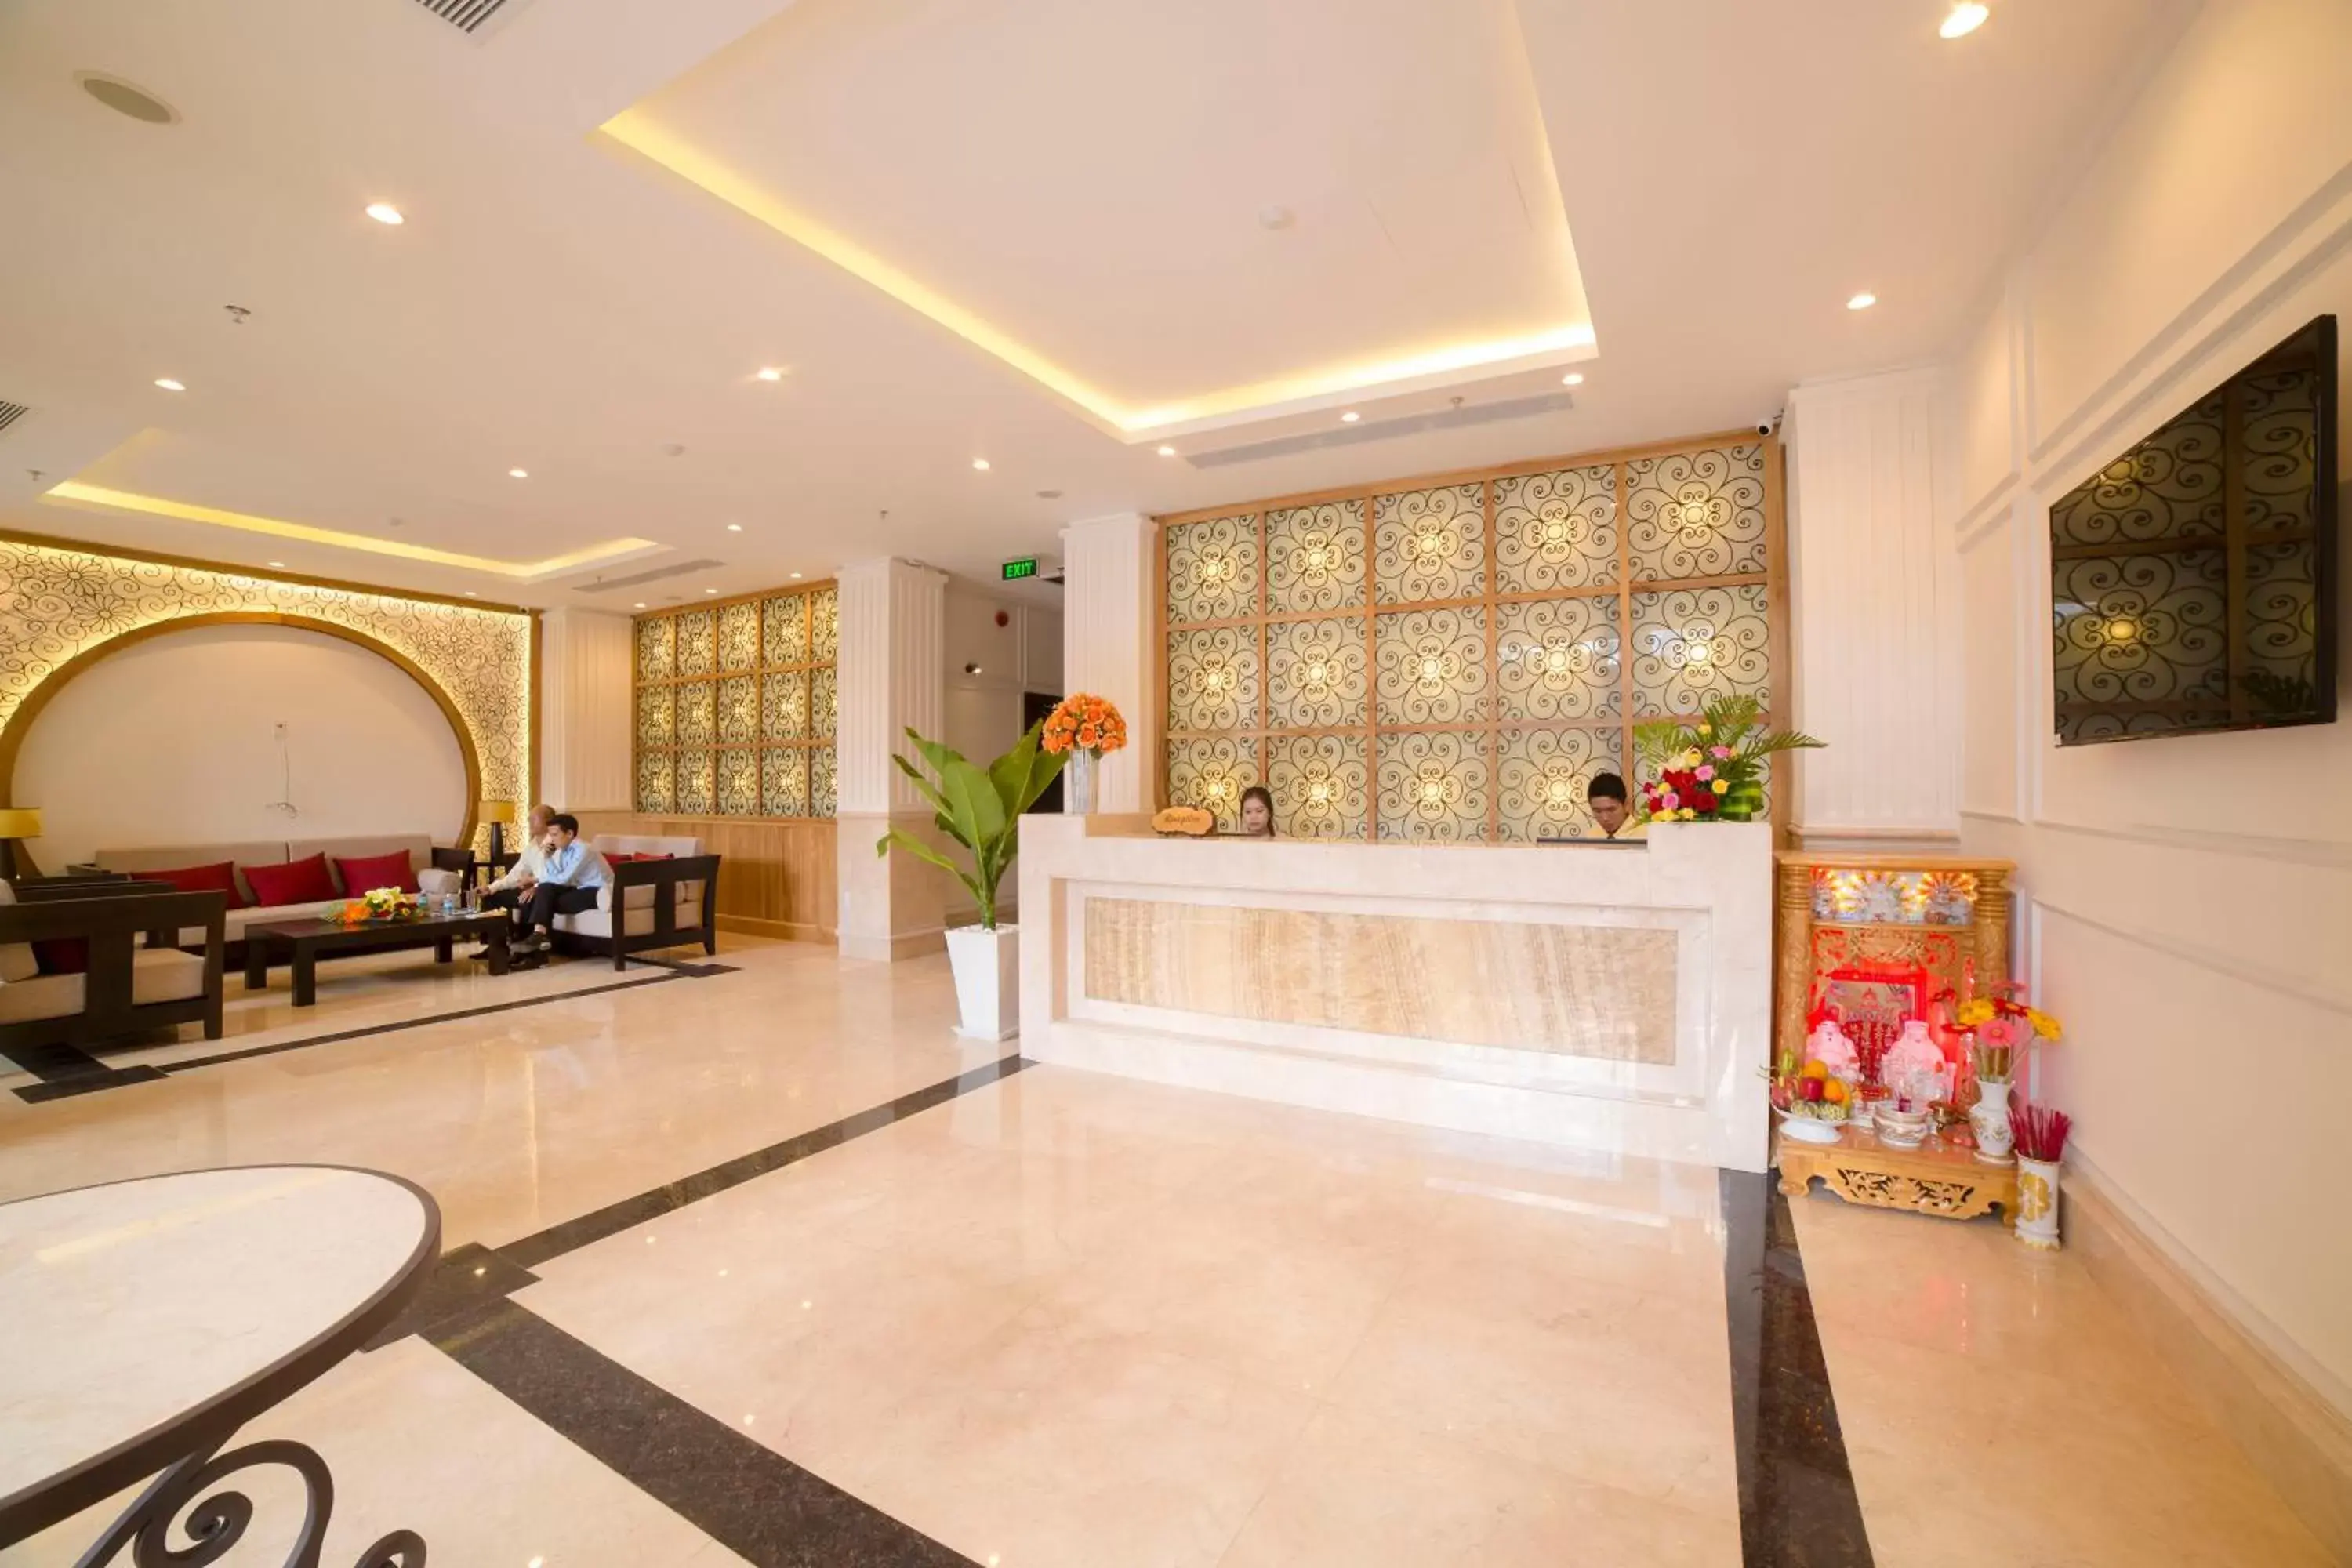 Lobby or reception, Lobby/Reception in Edele Hotel